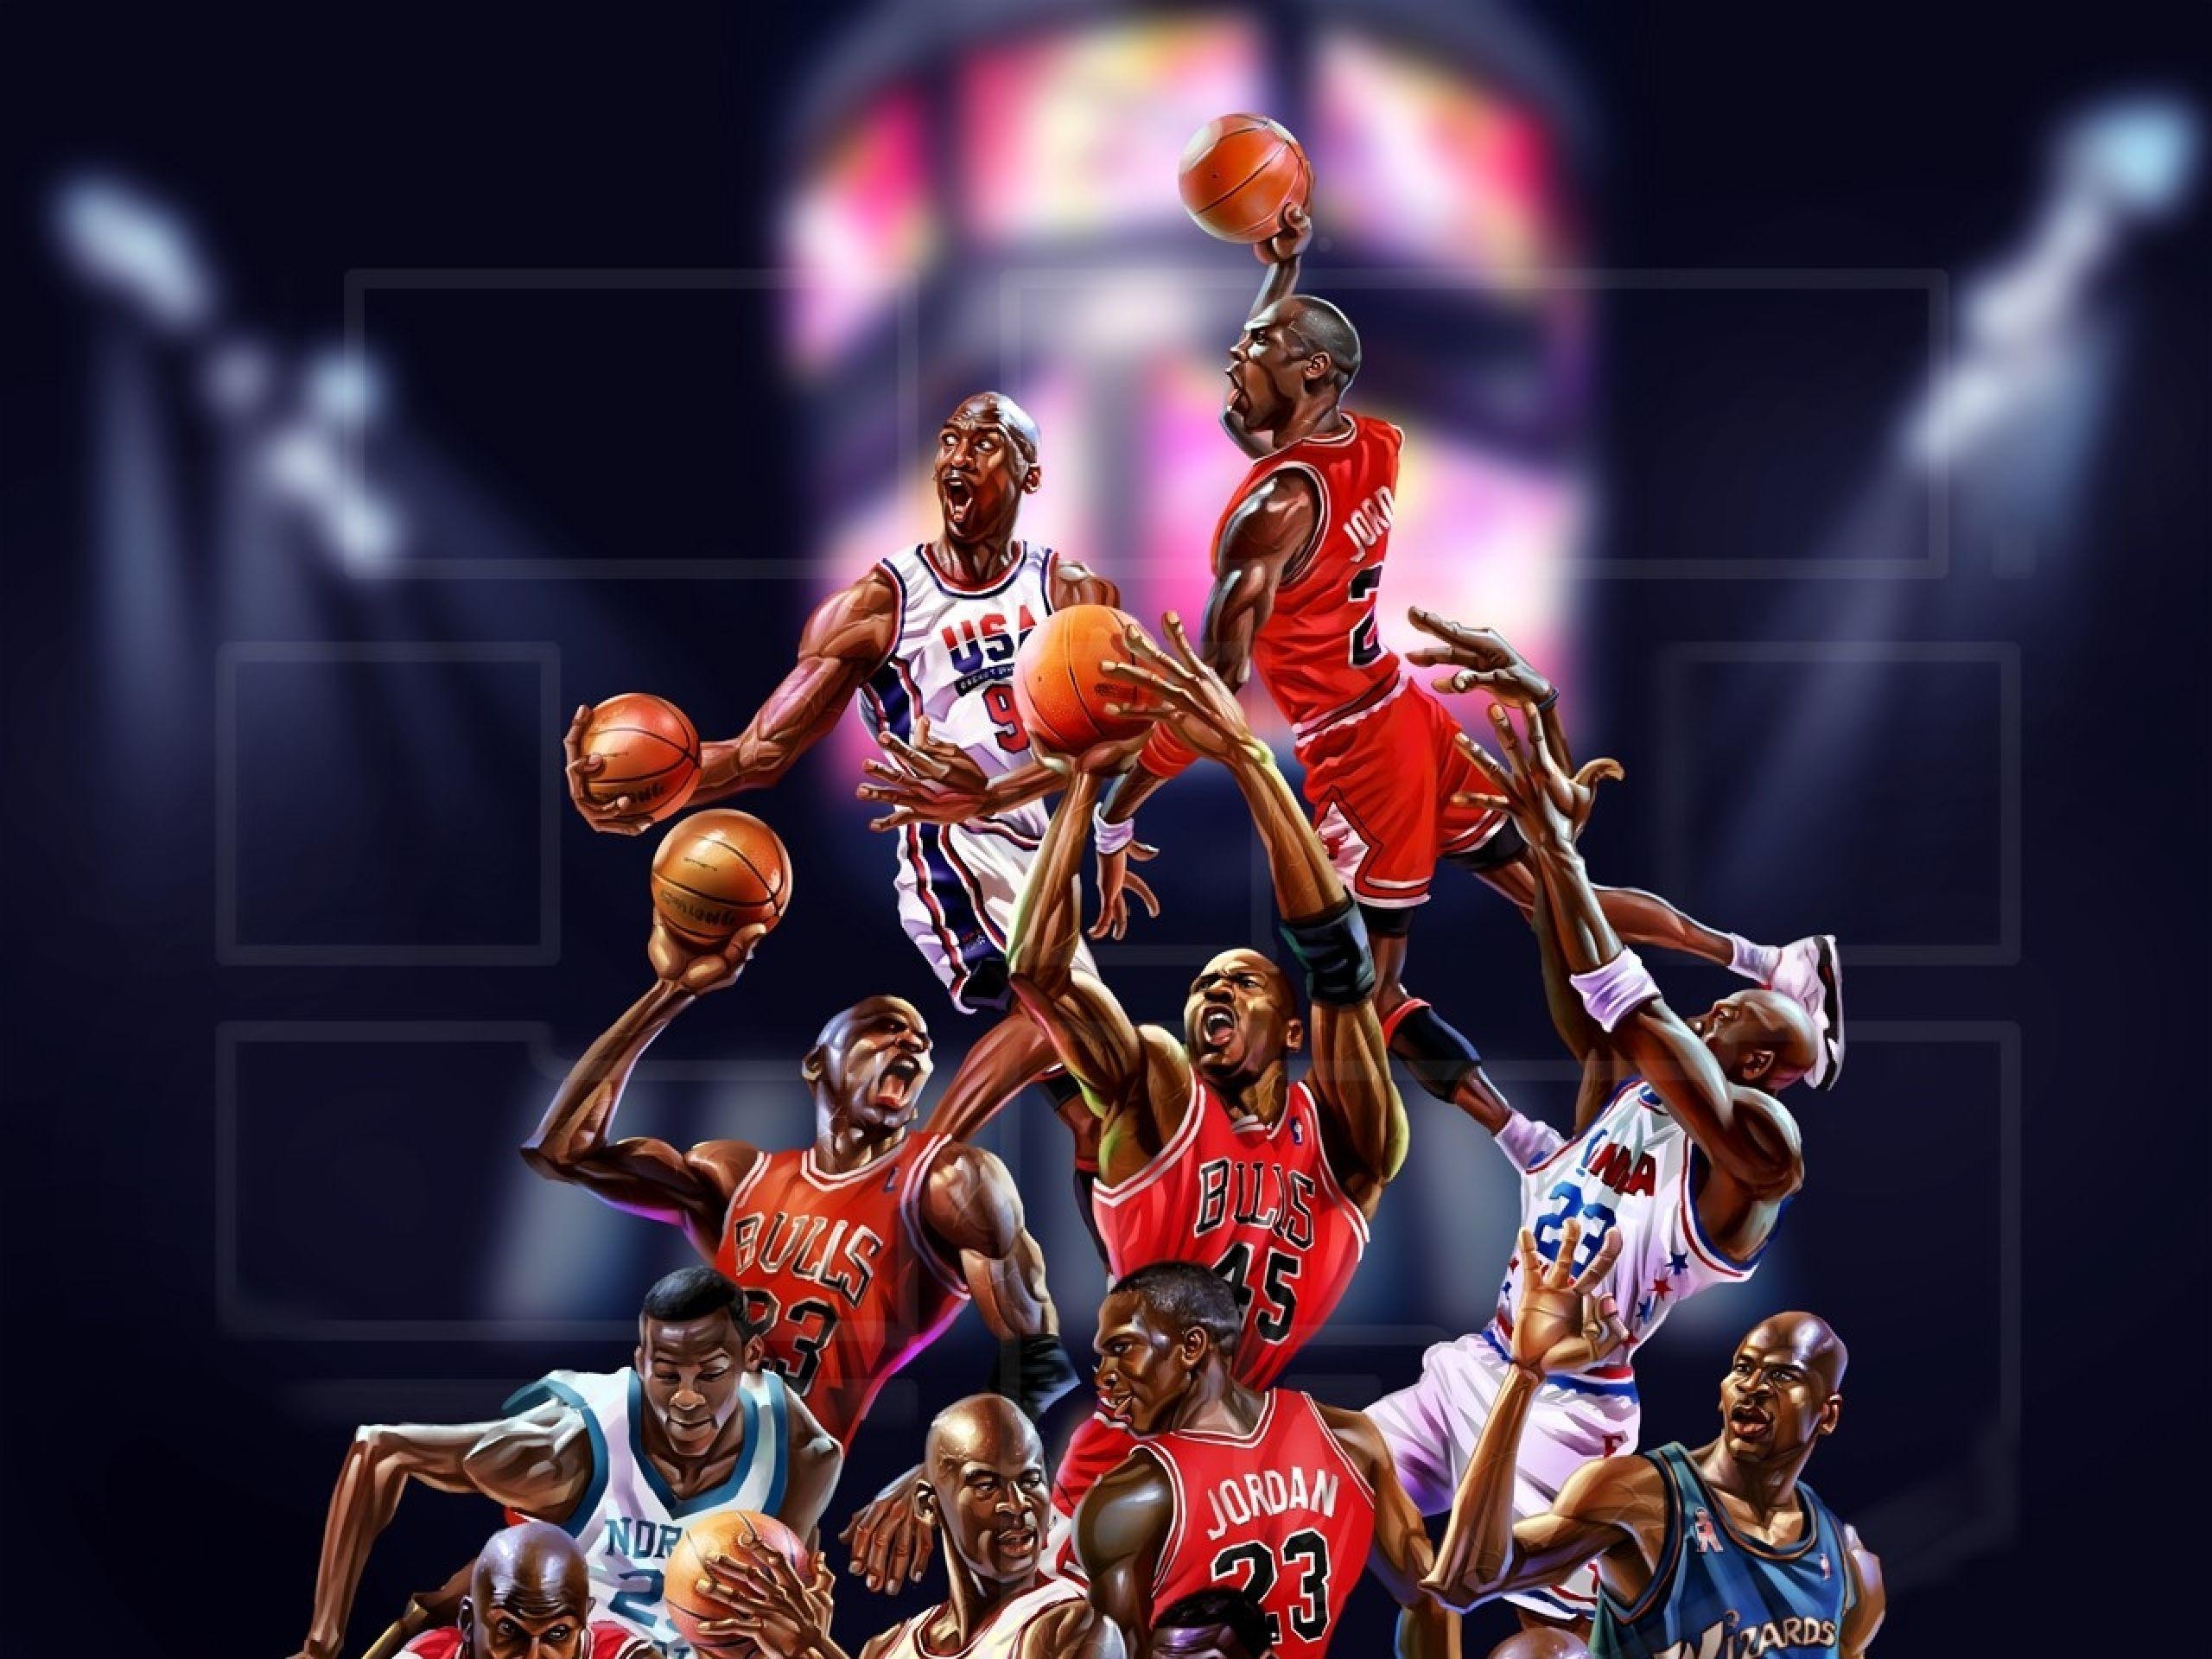 NBA Wallpaper. Sick NBA Wallpaper, NBA Cartoon Wallpaper and NBA Wallpaper